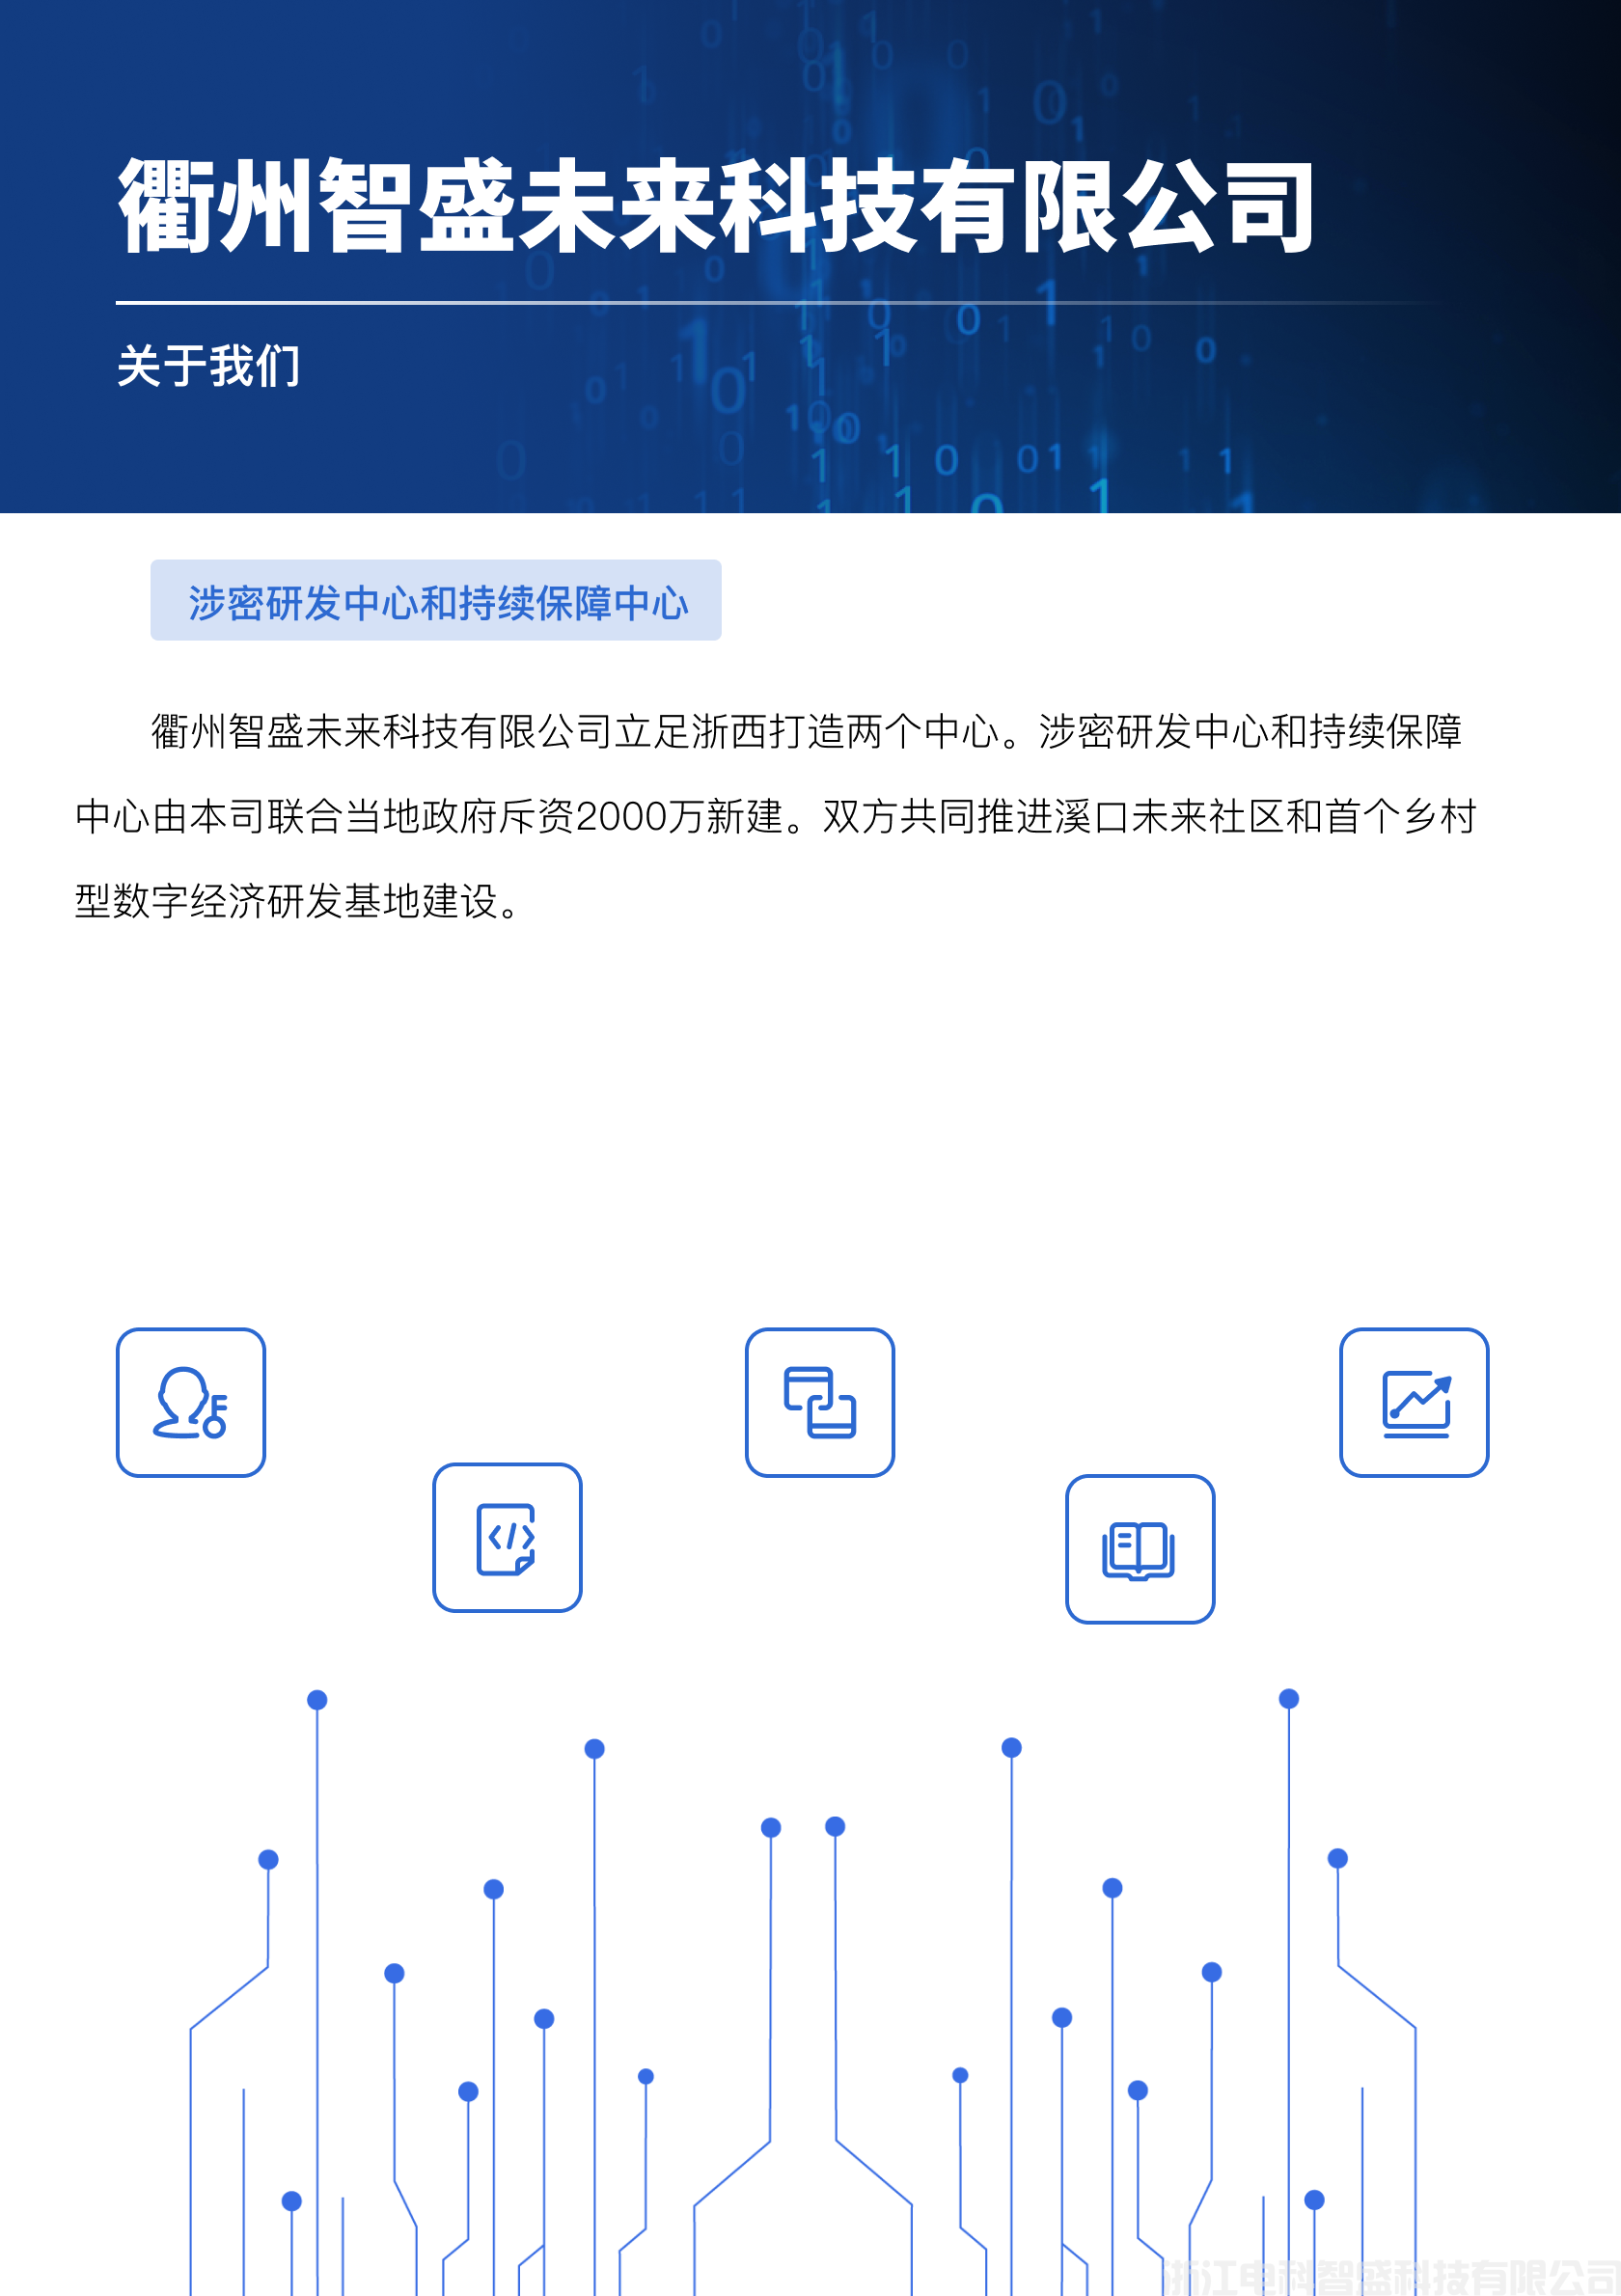 03 衢州智盛未来科技有限公司.png